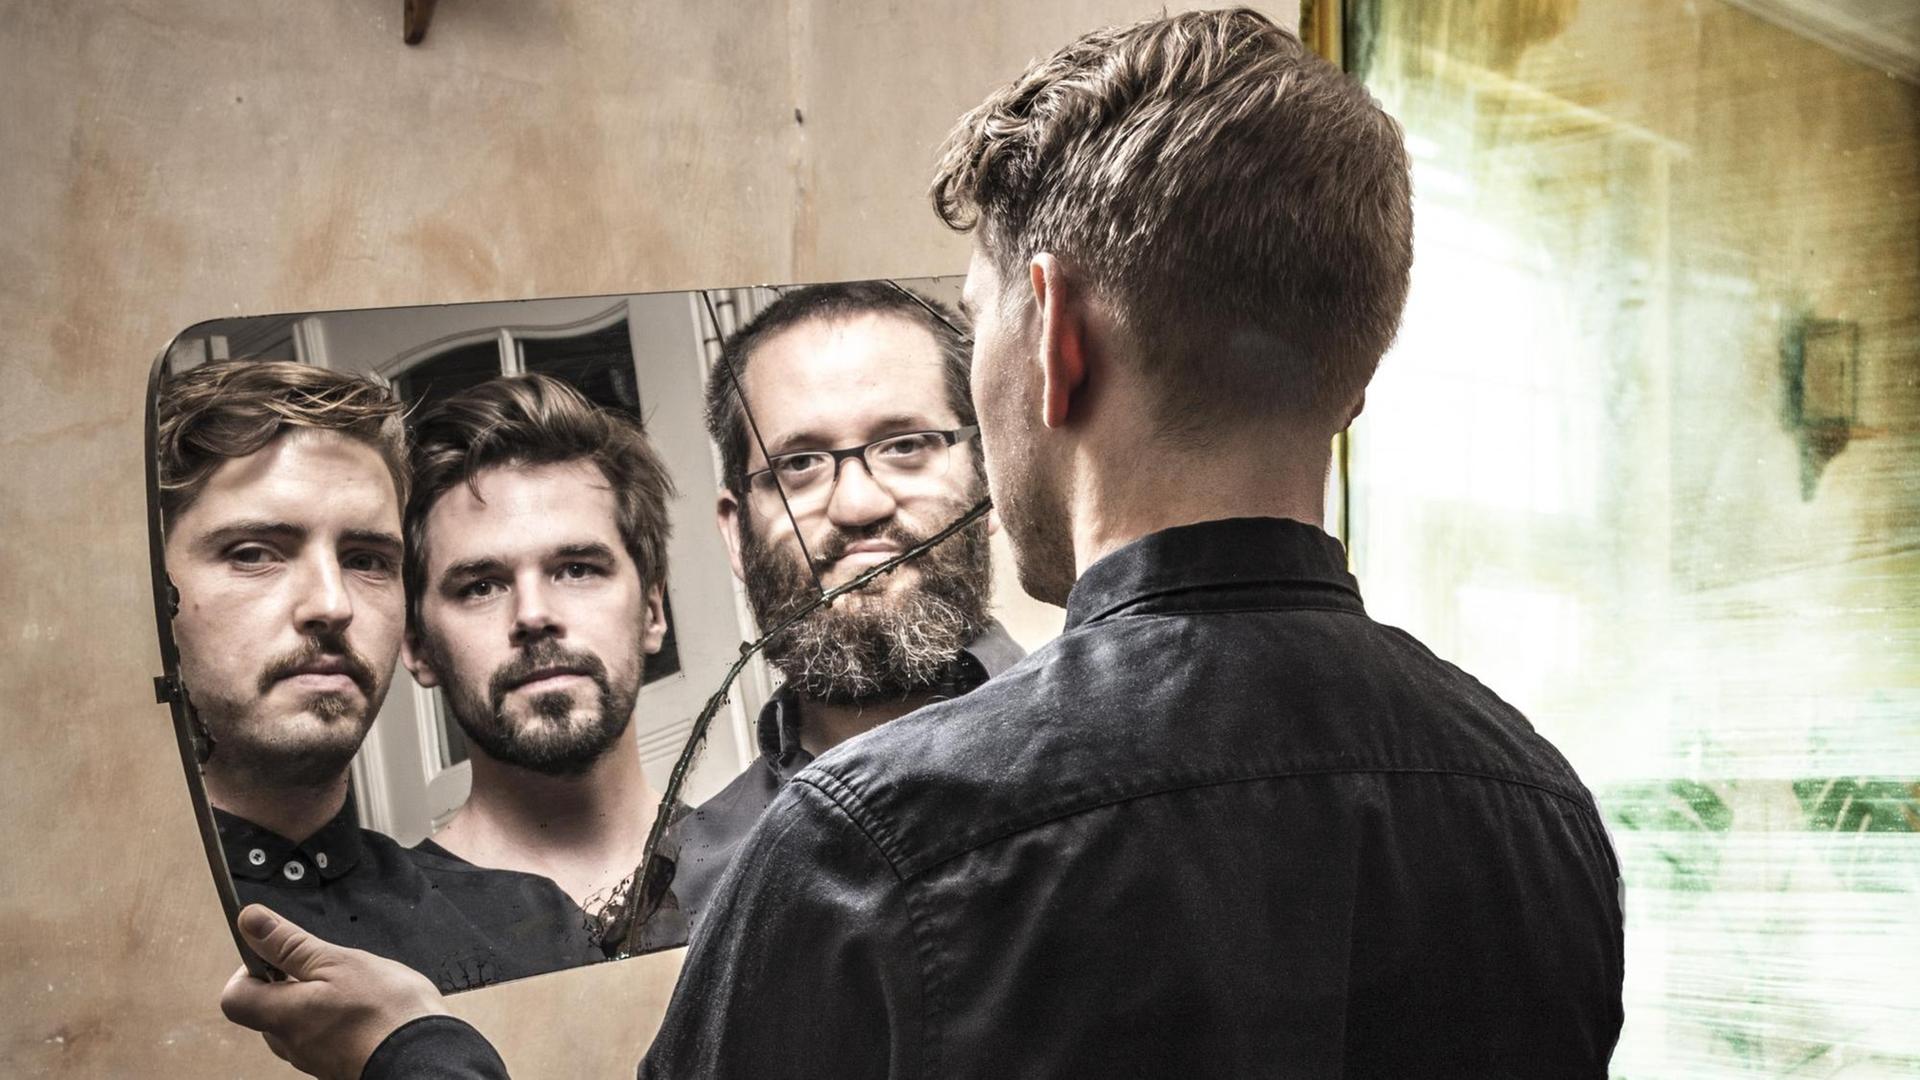 Ein Mann schaut in einen zerbrochenen Spiegel, in dem sich außer ihm zwei weitere Personen widerspiegeln